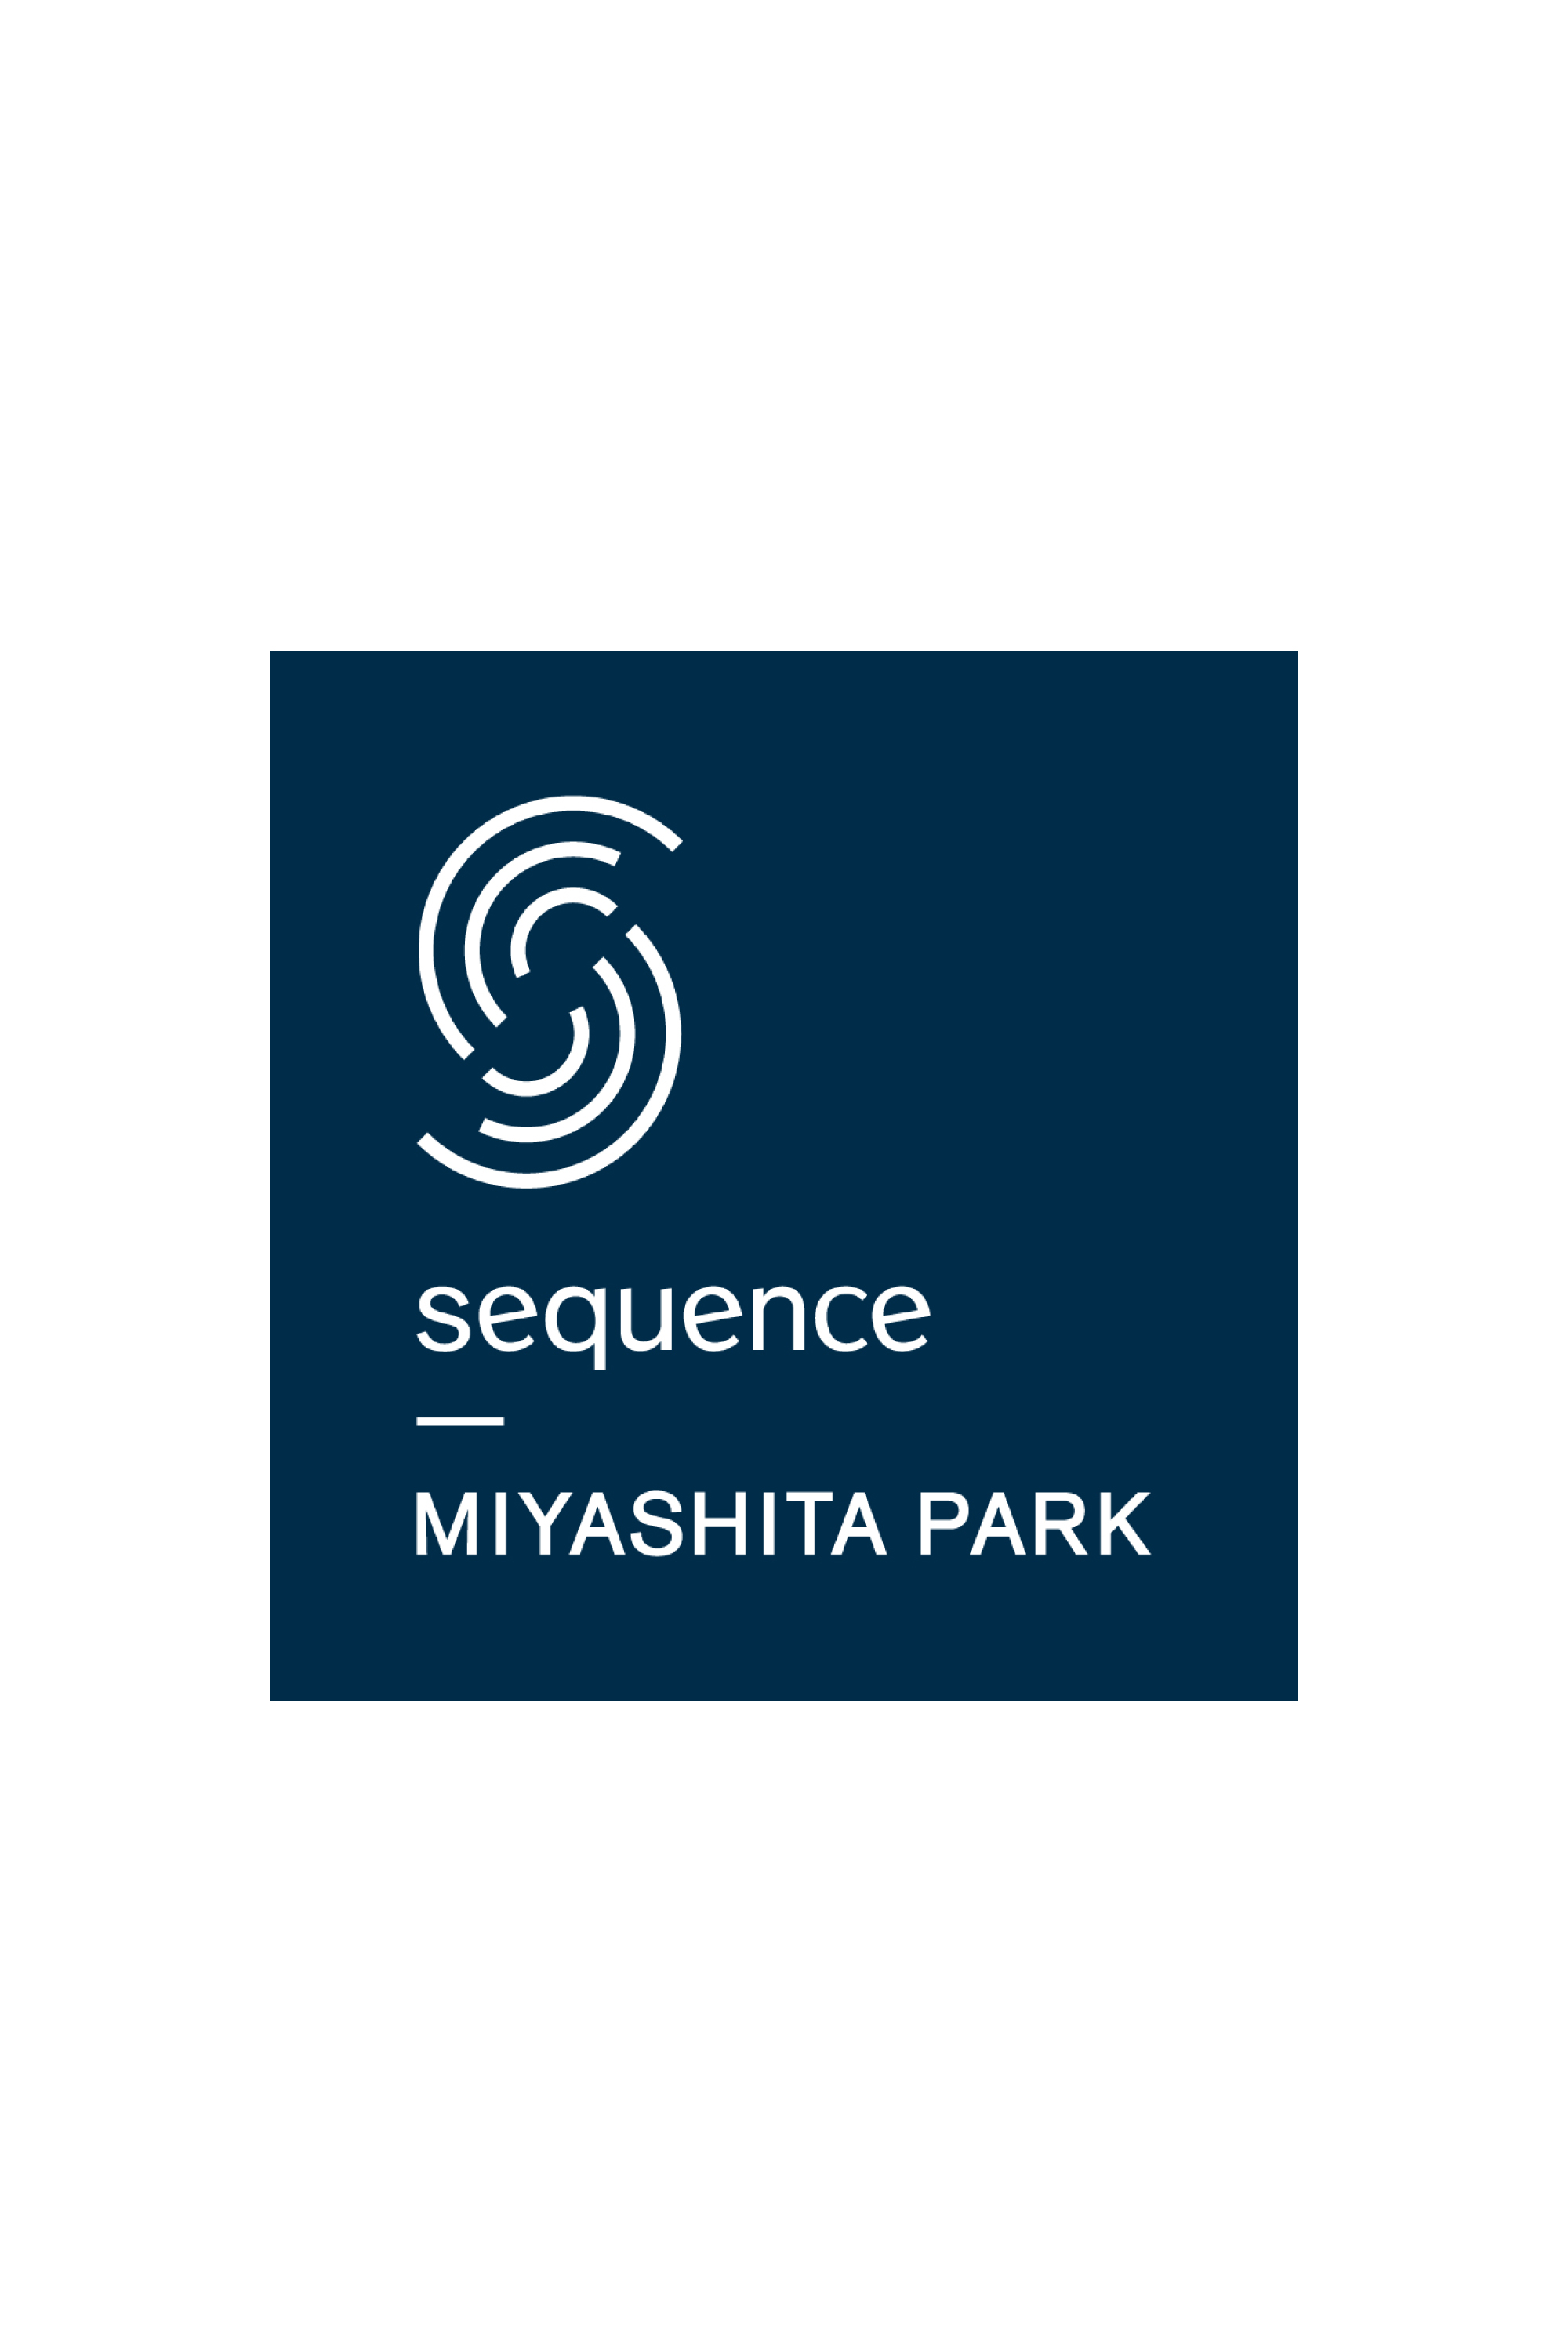 Diesel - sequence MIYASHITA PARK, ジェネリック - Image 1